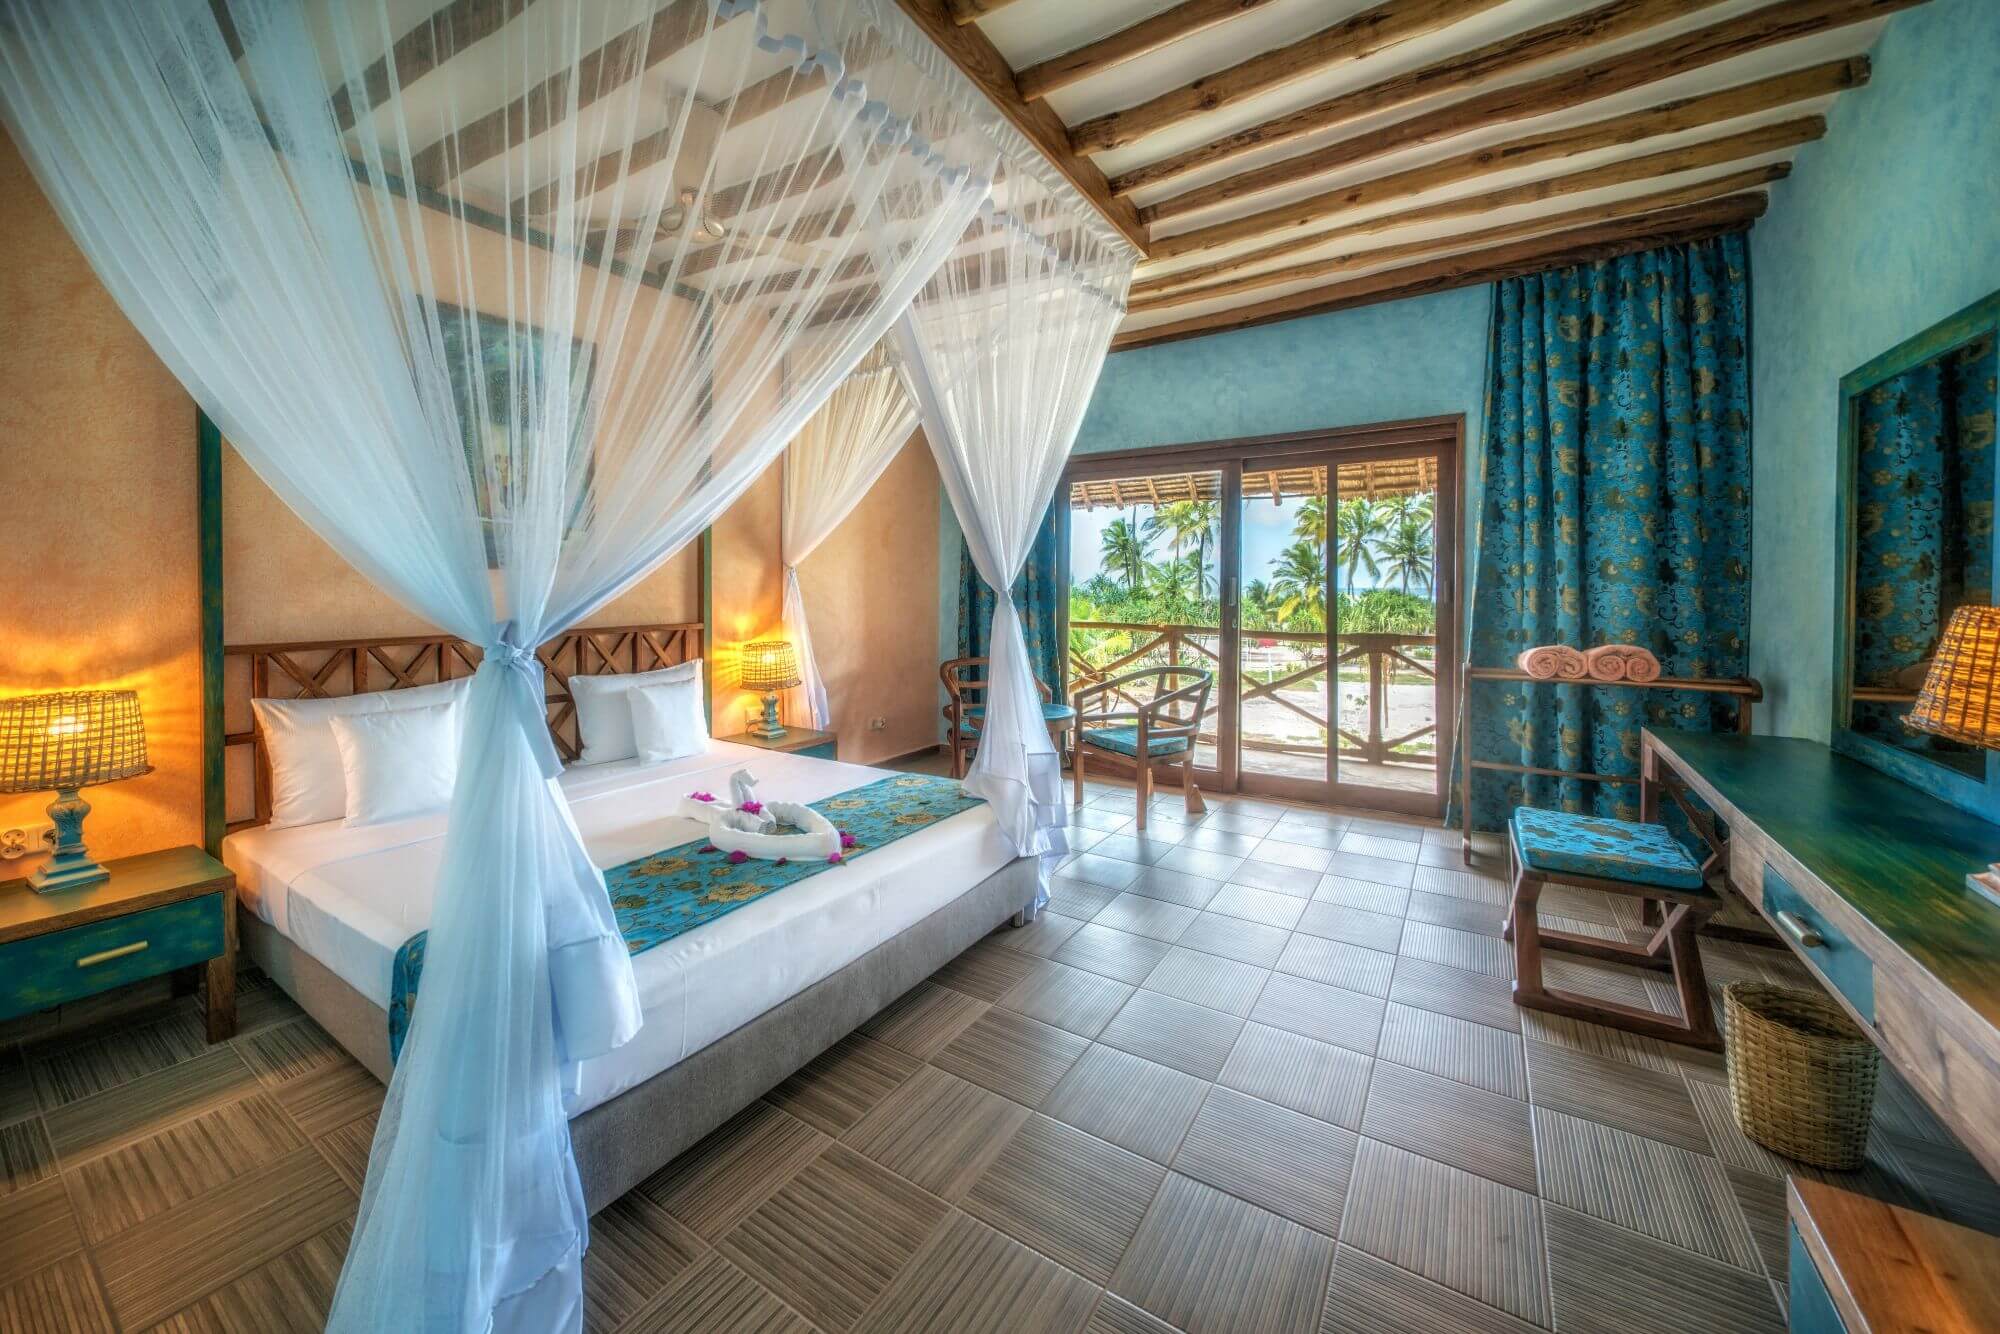 Zanzibar Queen Hotel - Room (1) - 